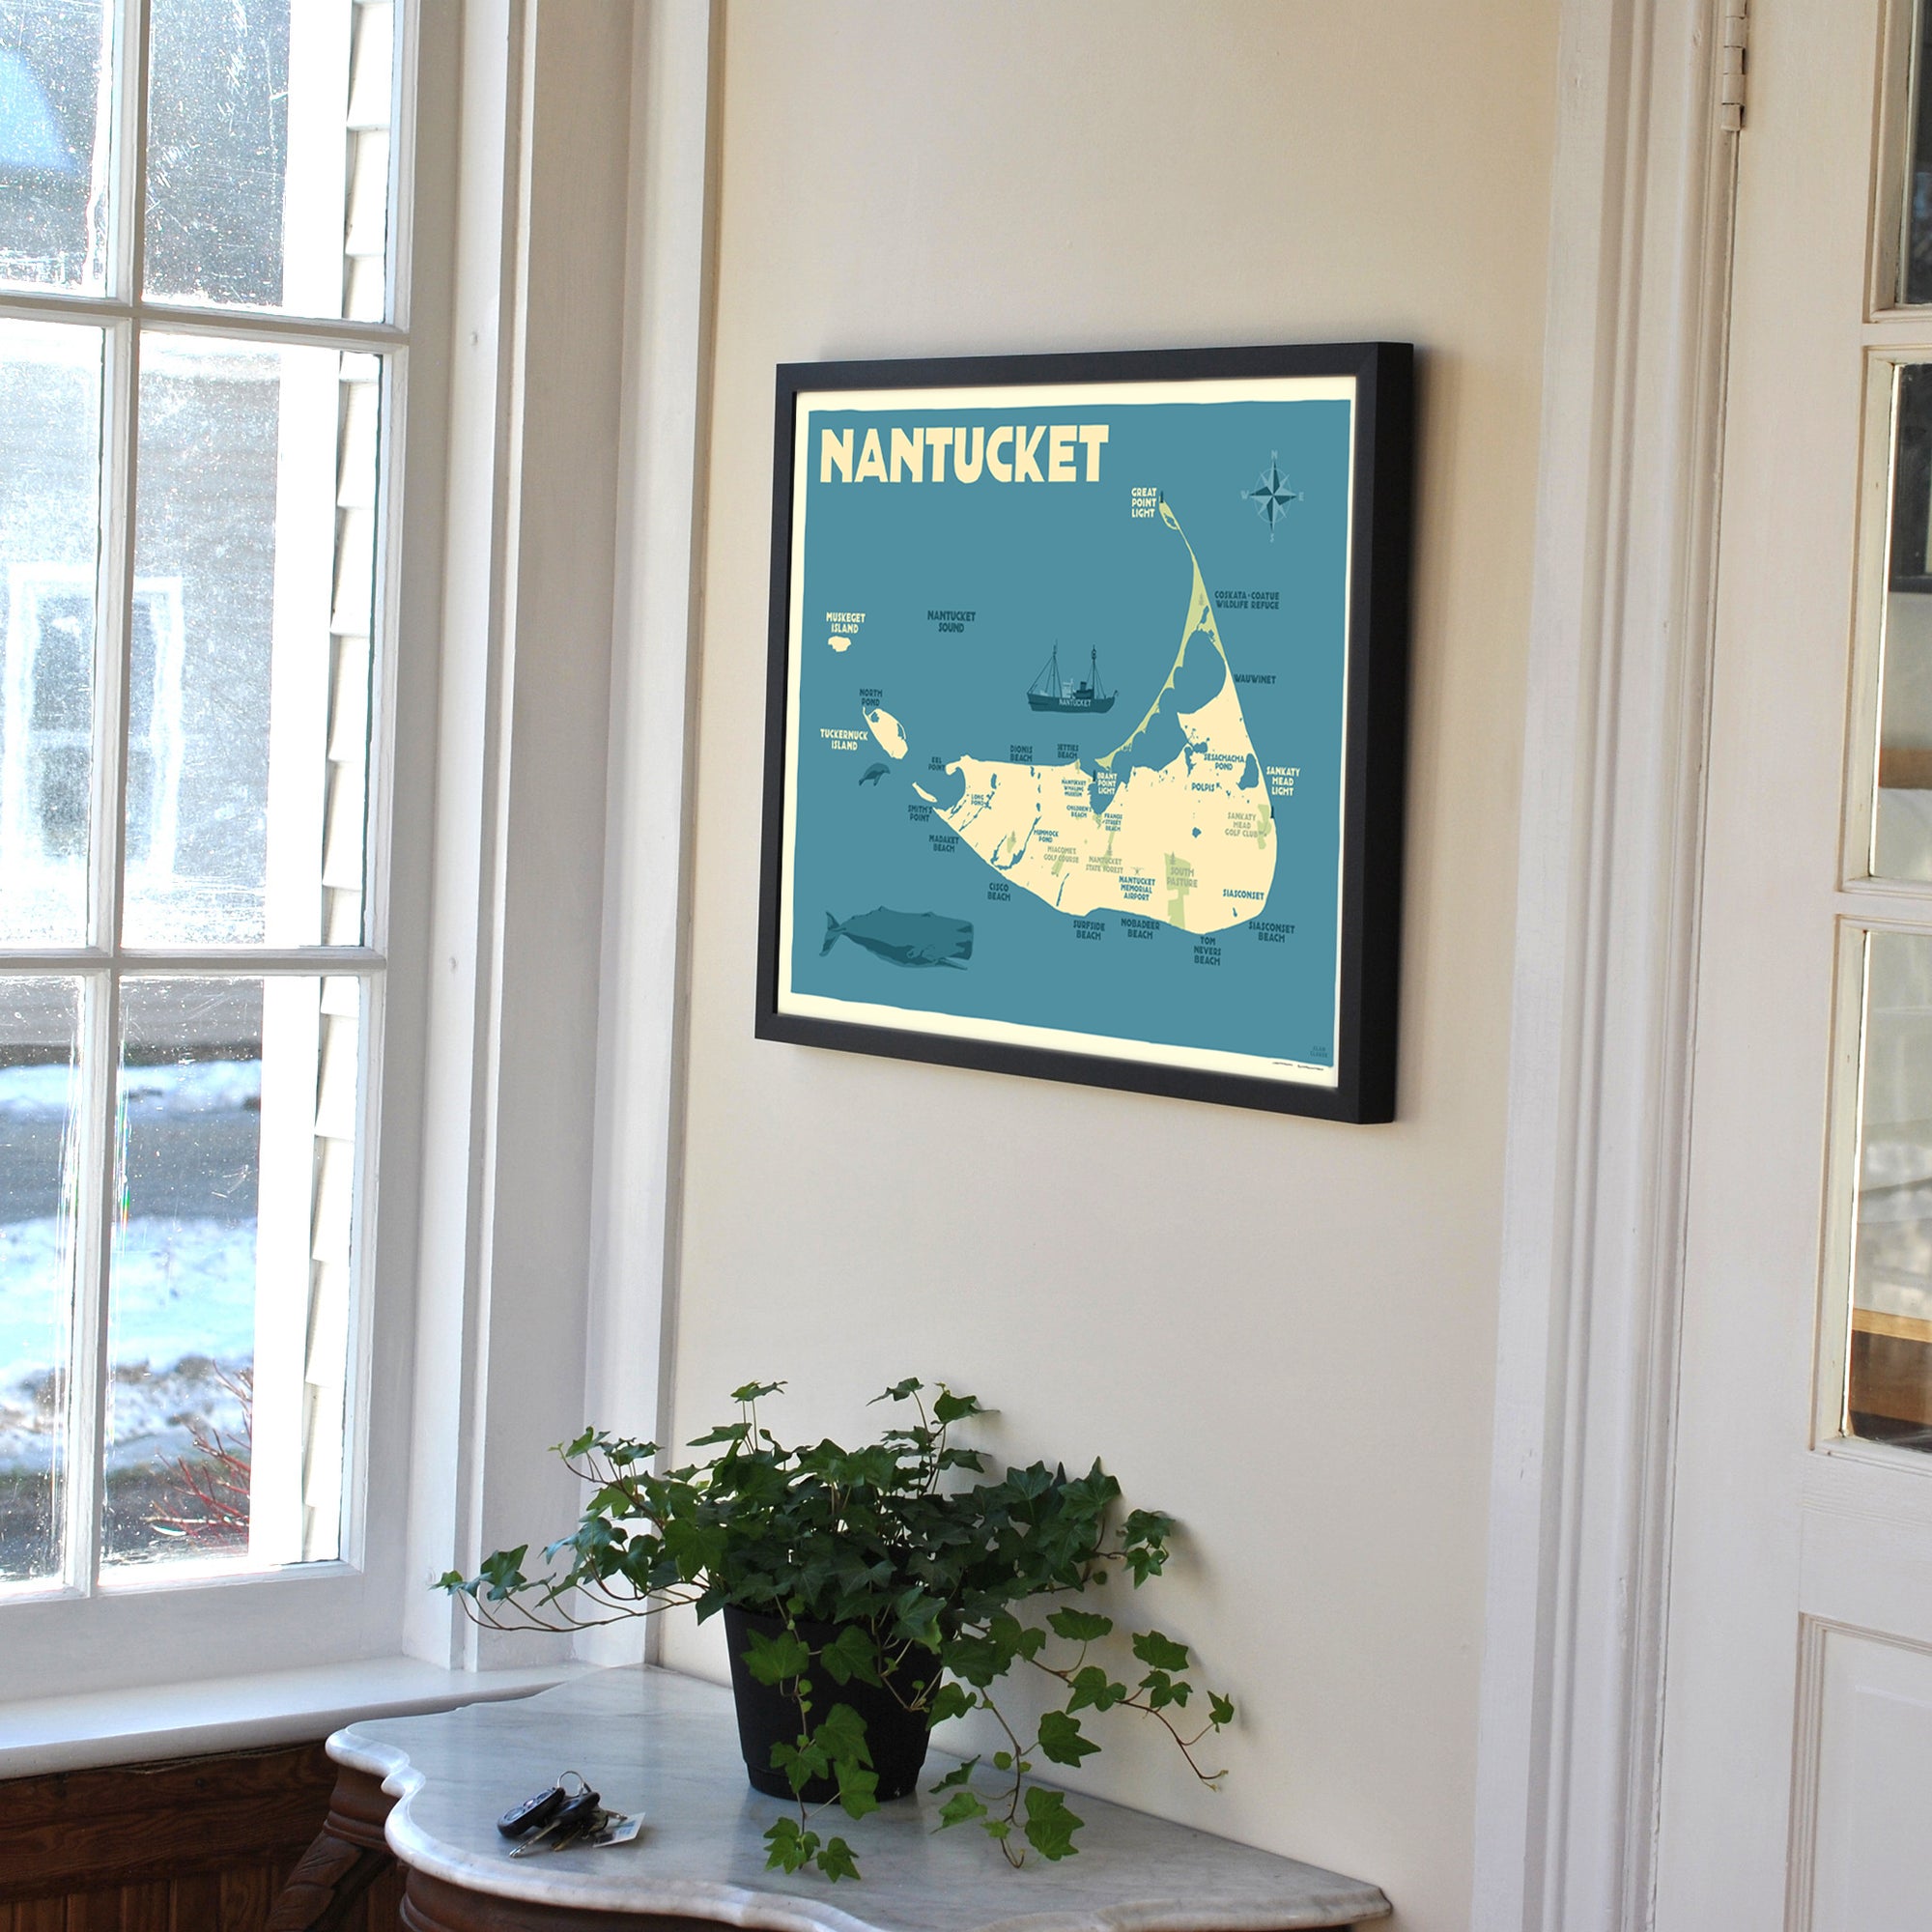 Nantucket Map Art Print 18" x 24" Horizontal Framed Travel Poster By Alan Claude - Massachusetts